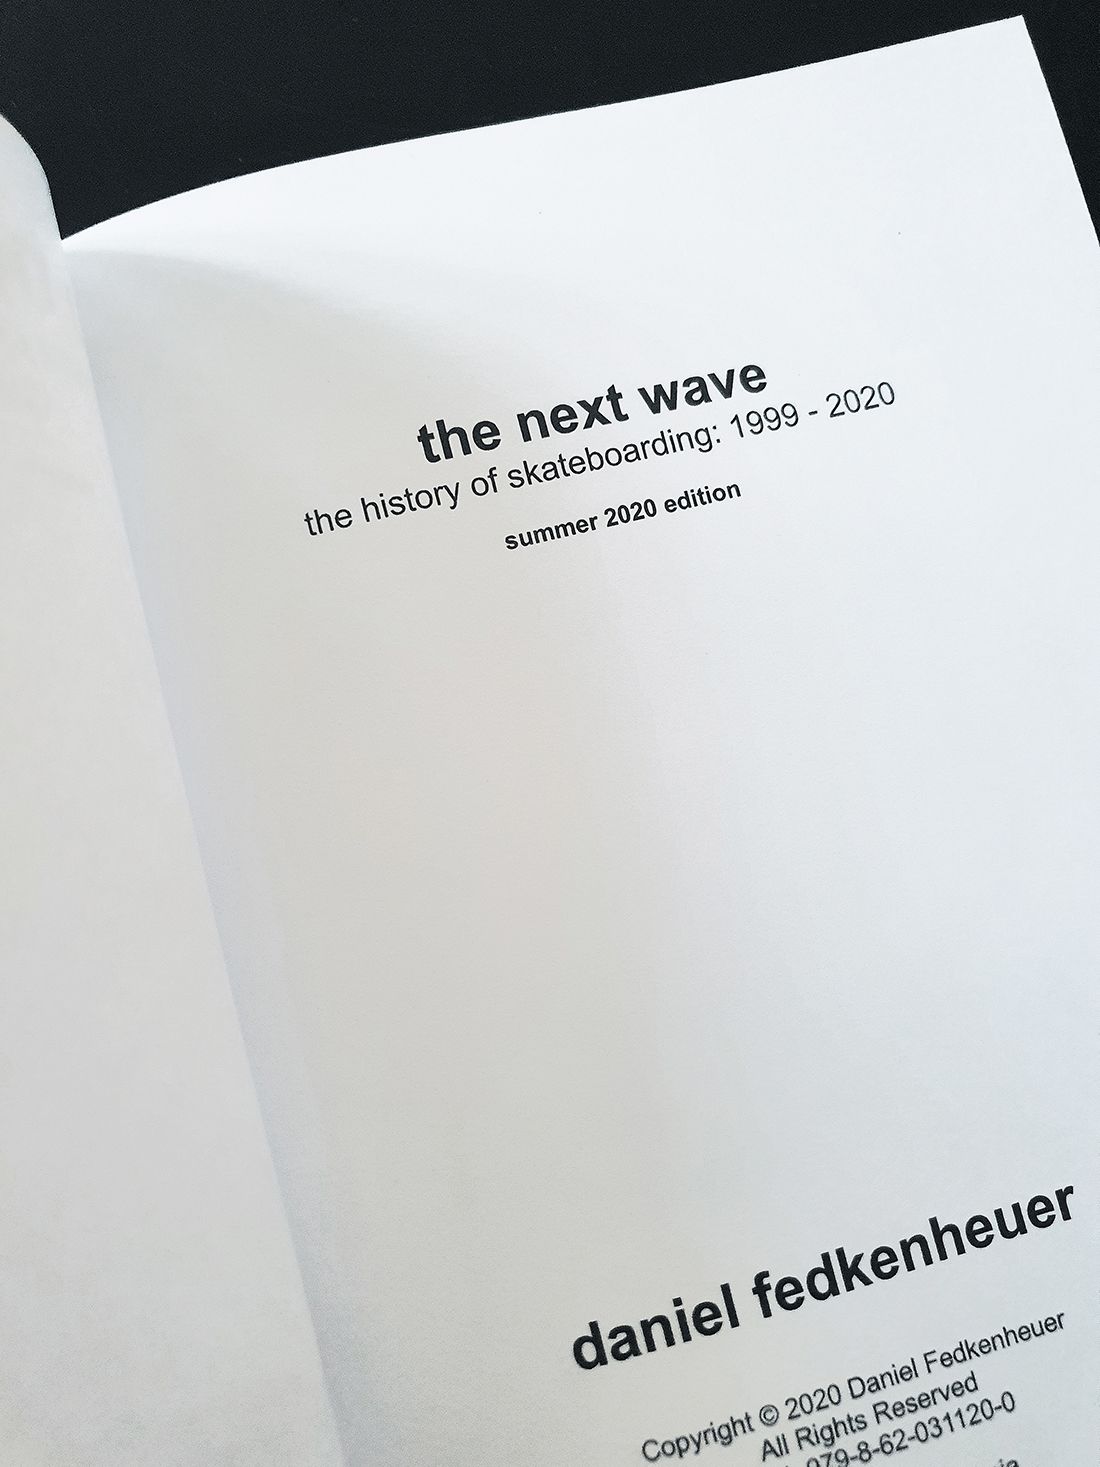 The Next Wave Book Par Daniel Fedkenheuer HD 1